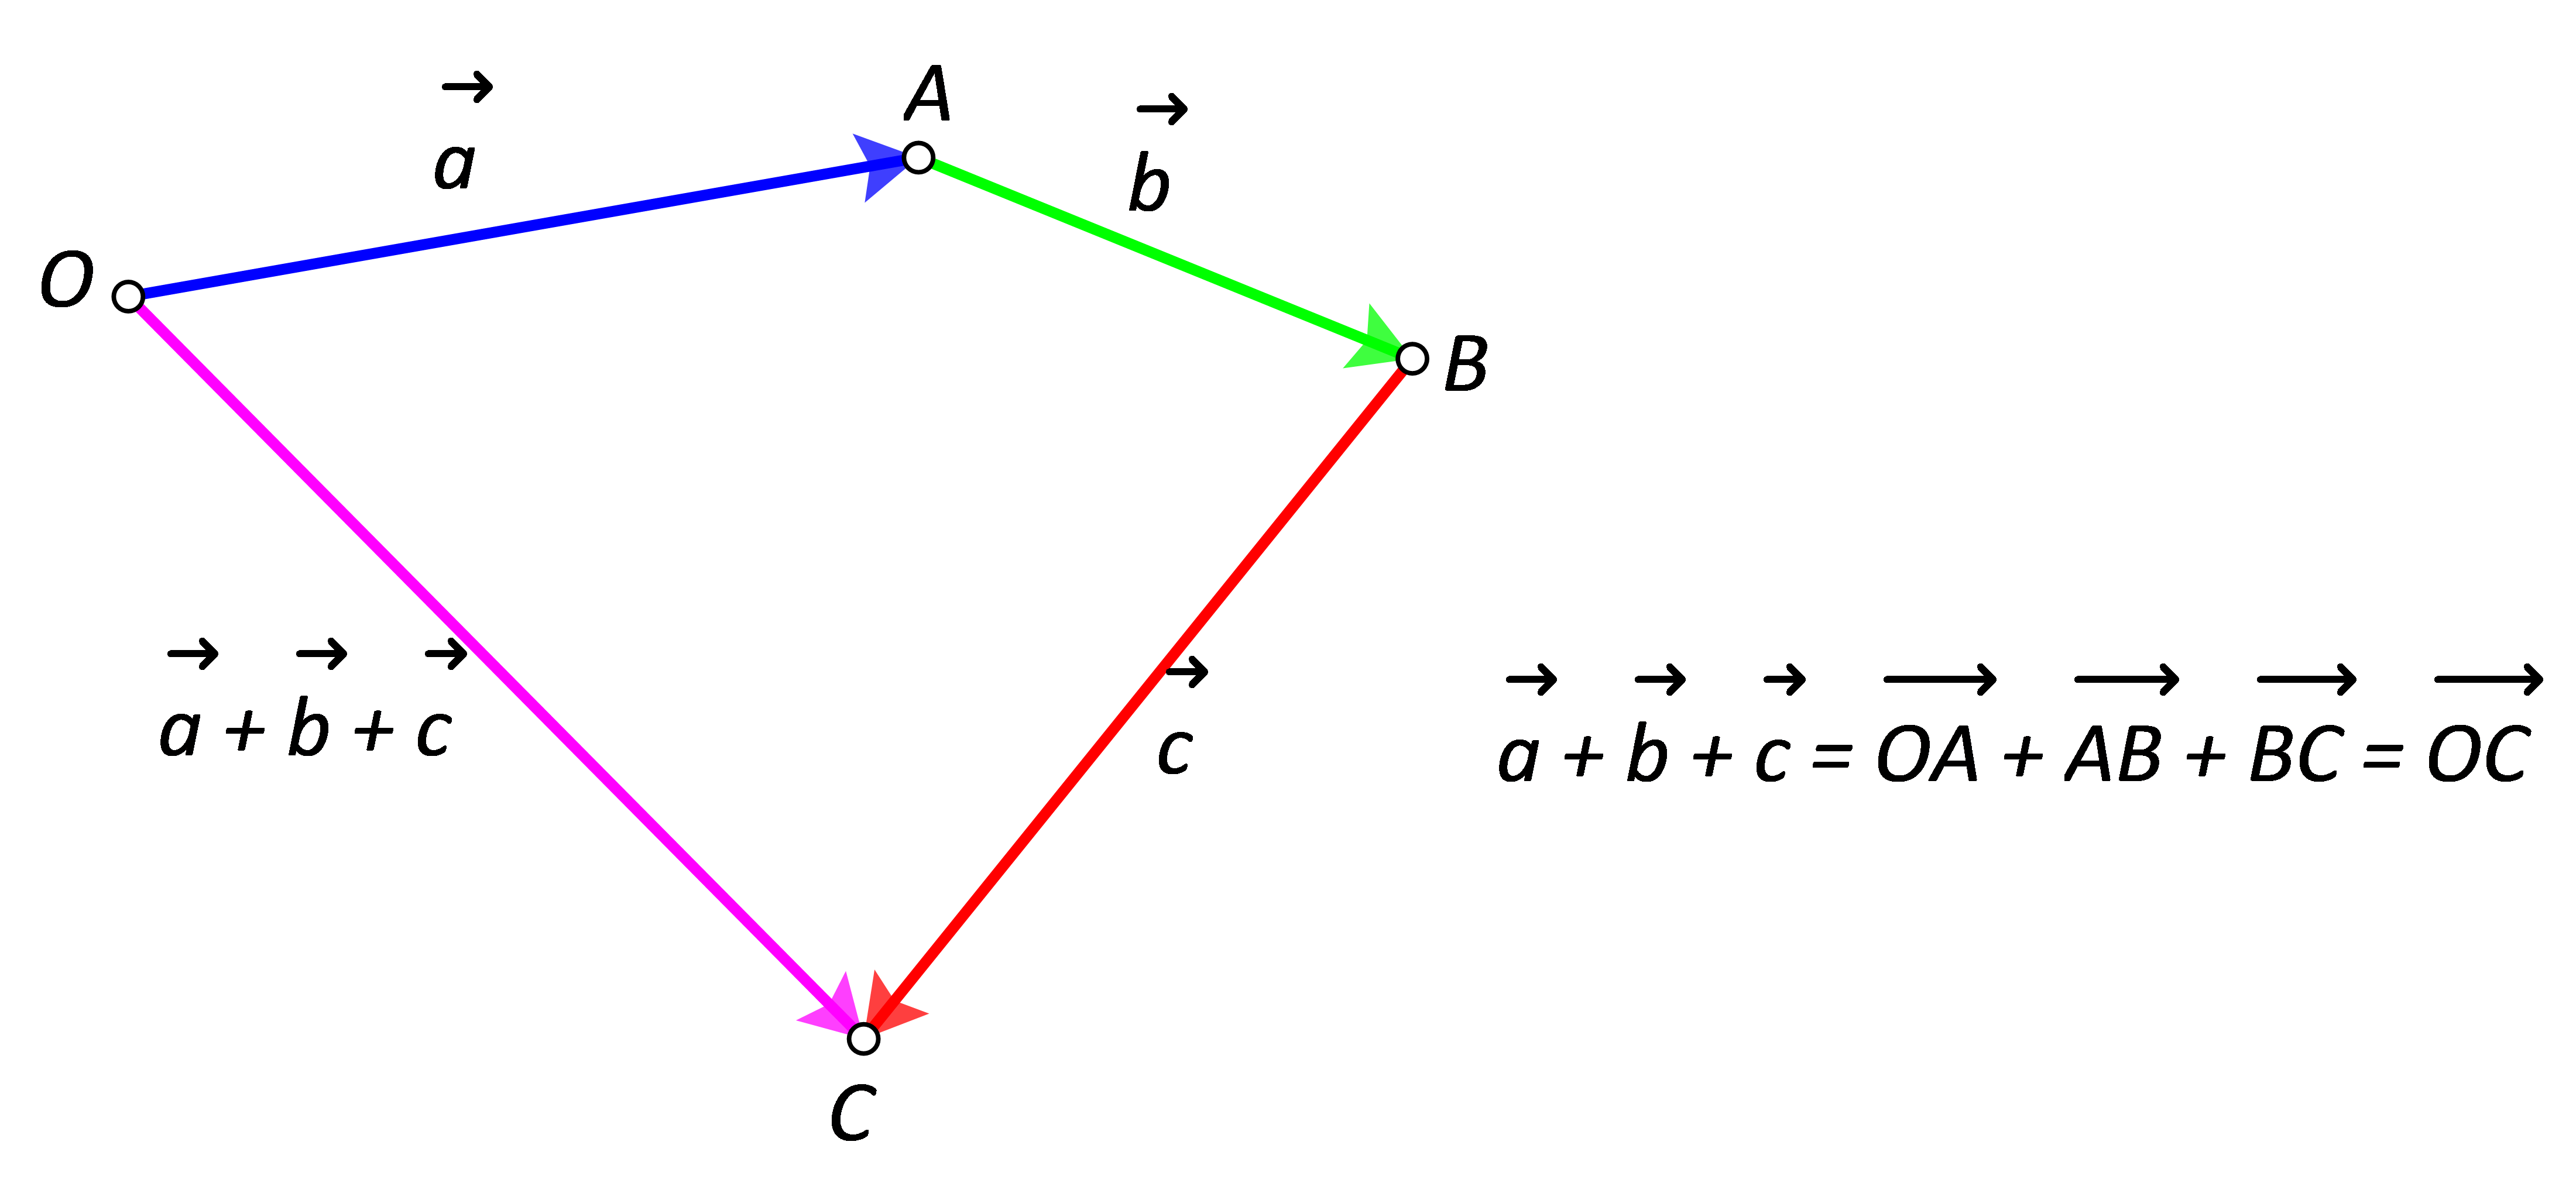 Slika prikazuje zbroj triju nekolinearnih vektora dobiven "nadovezivanjem" početka sljedećeg vektora na završetak prethodnoga.